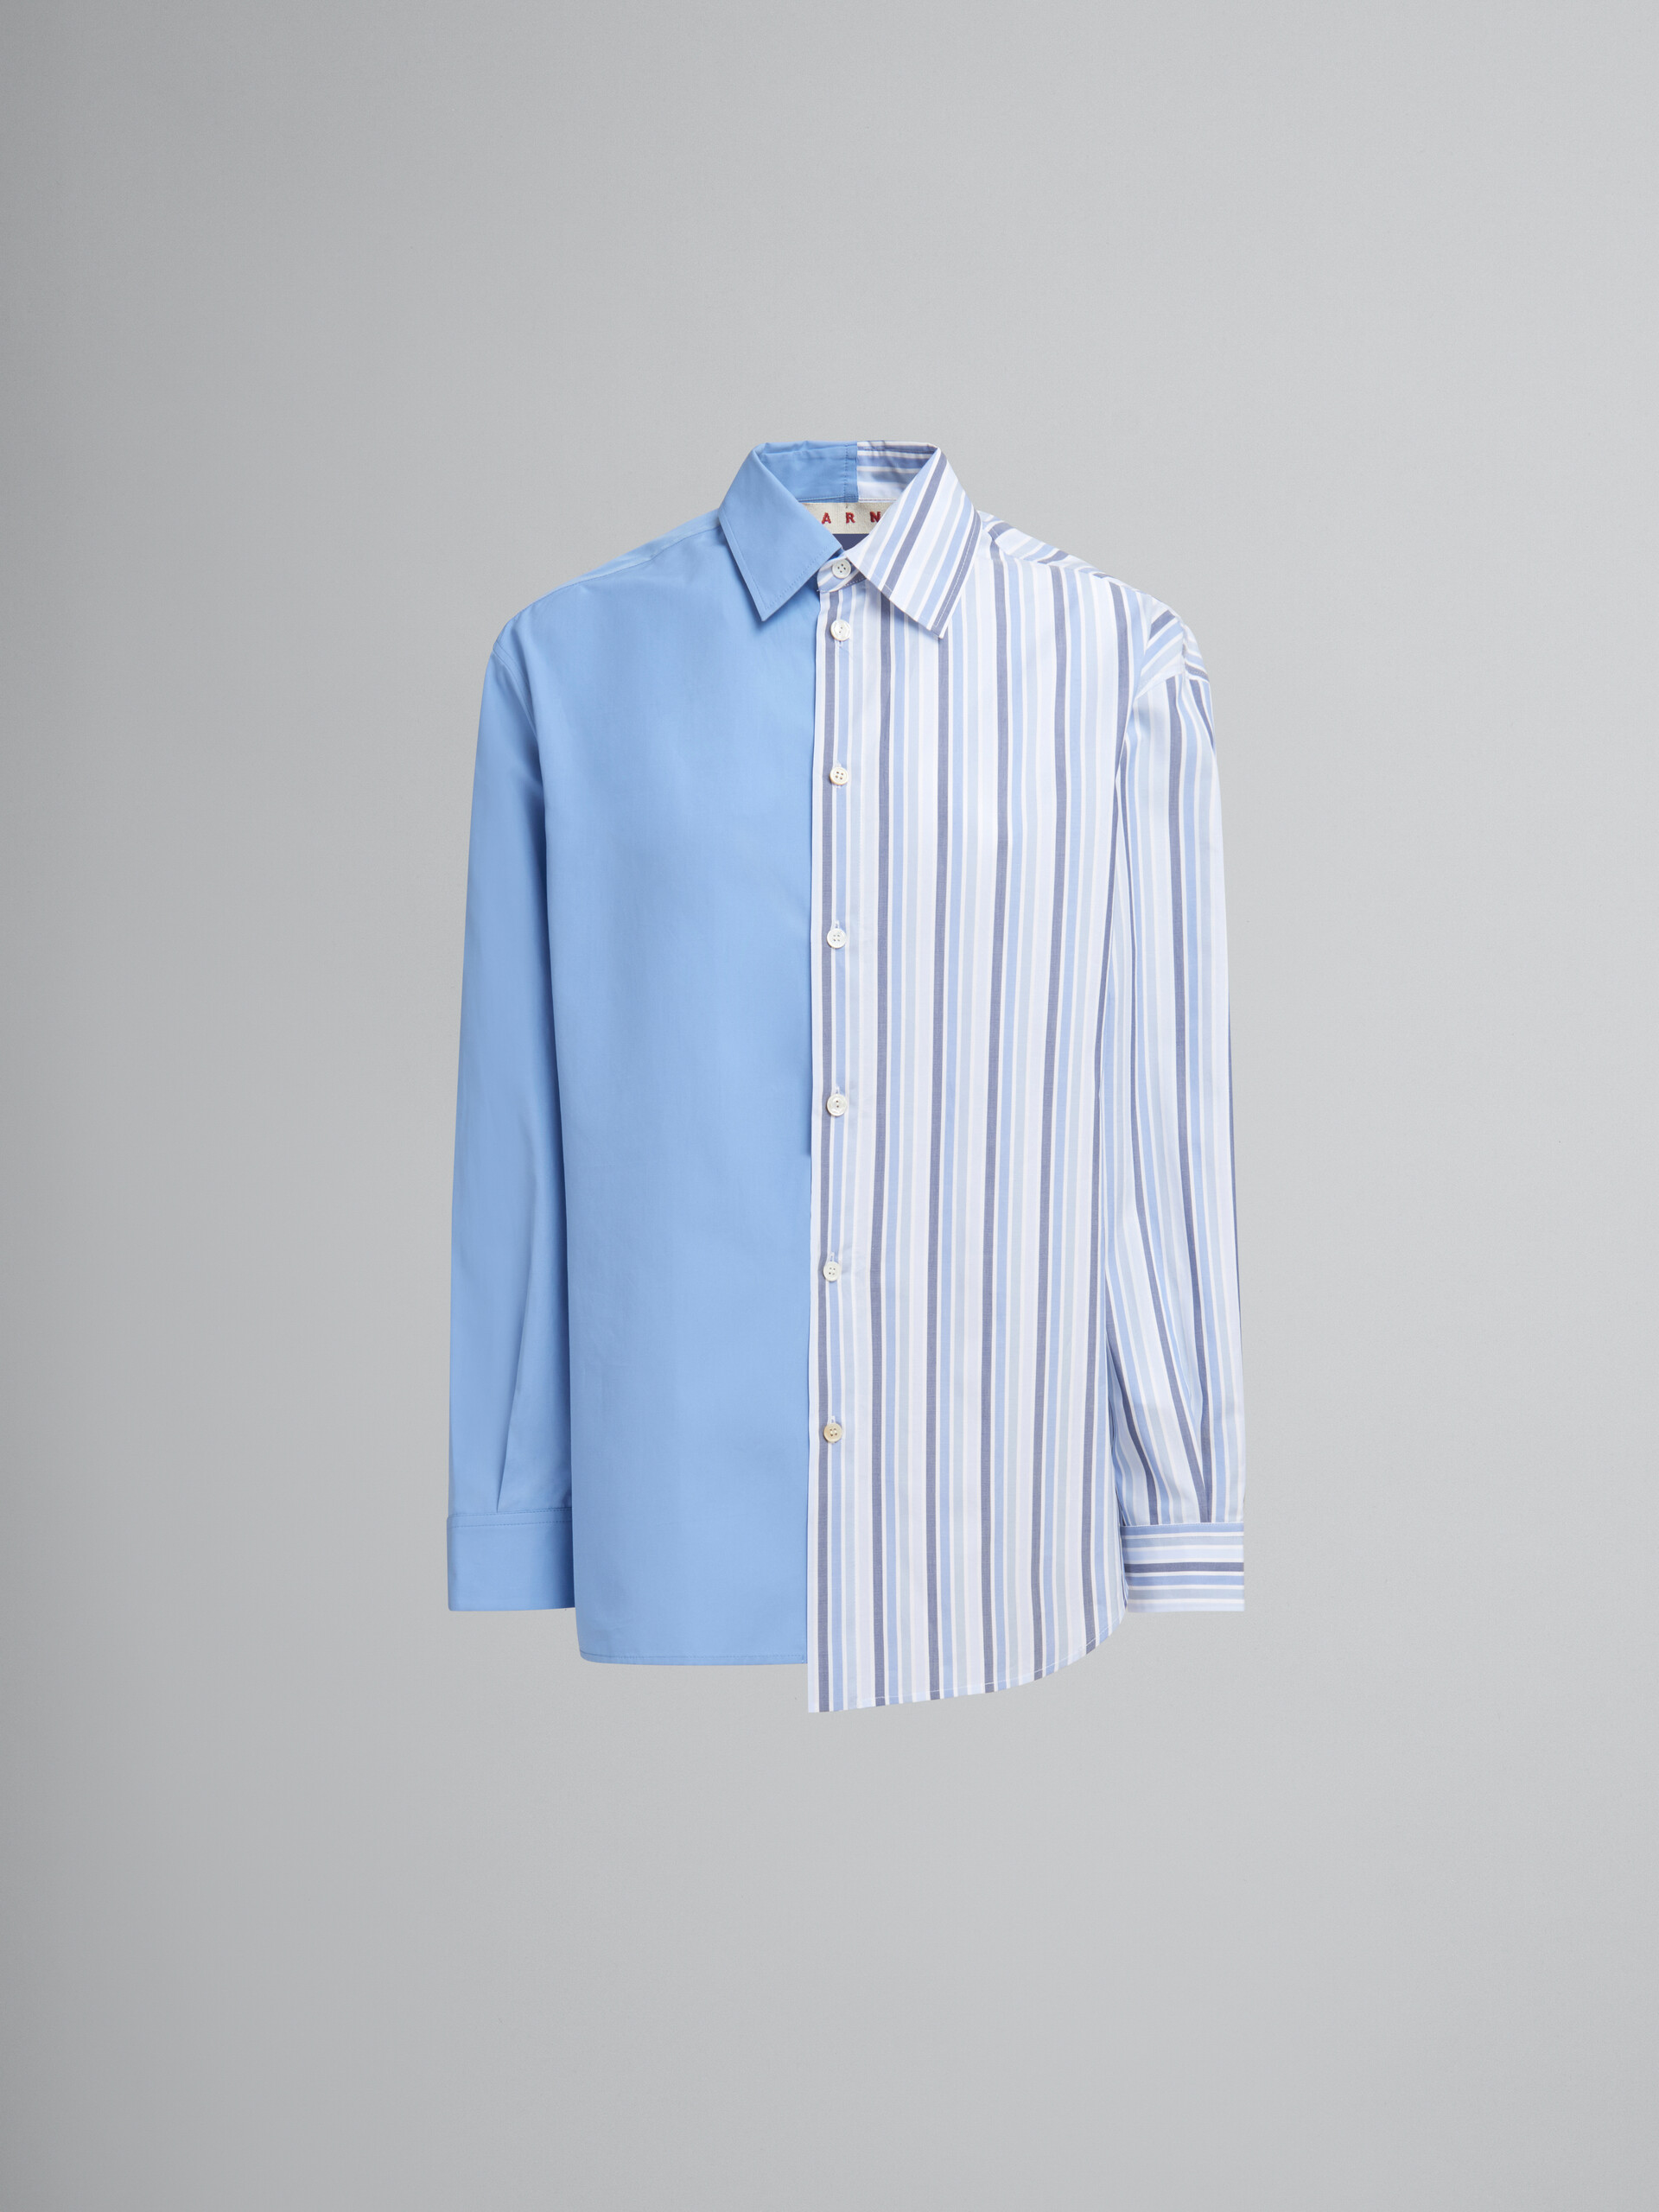 Camicia metà e metà in popeline biologico blu con laccio - Camicie - Image 1